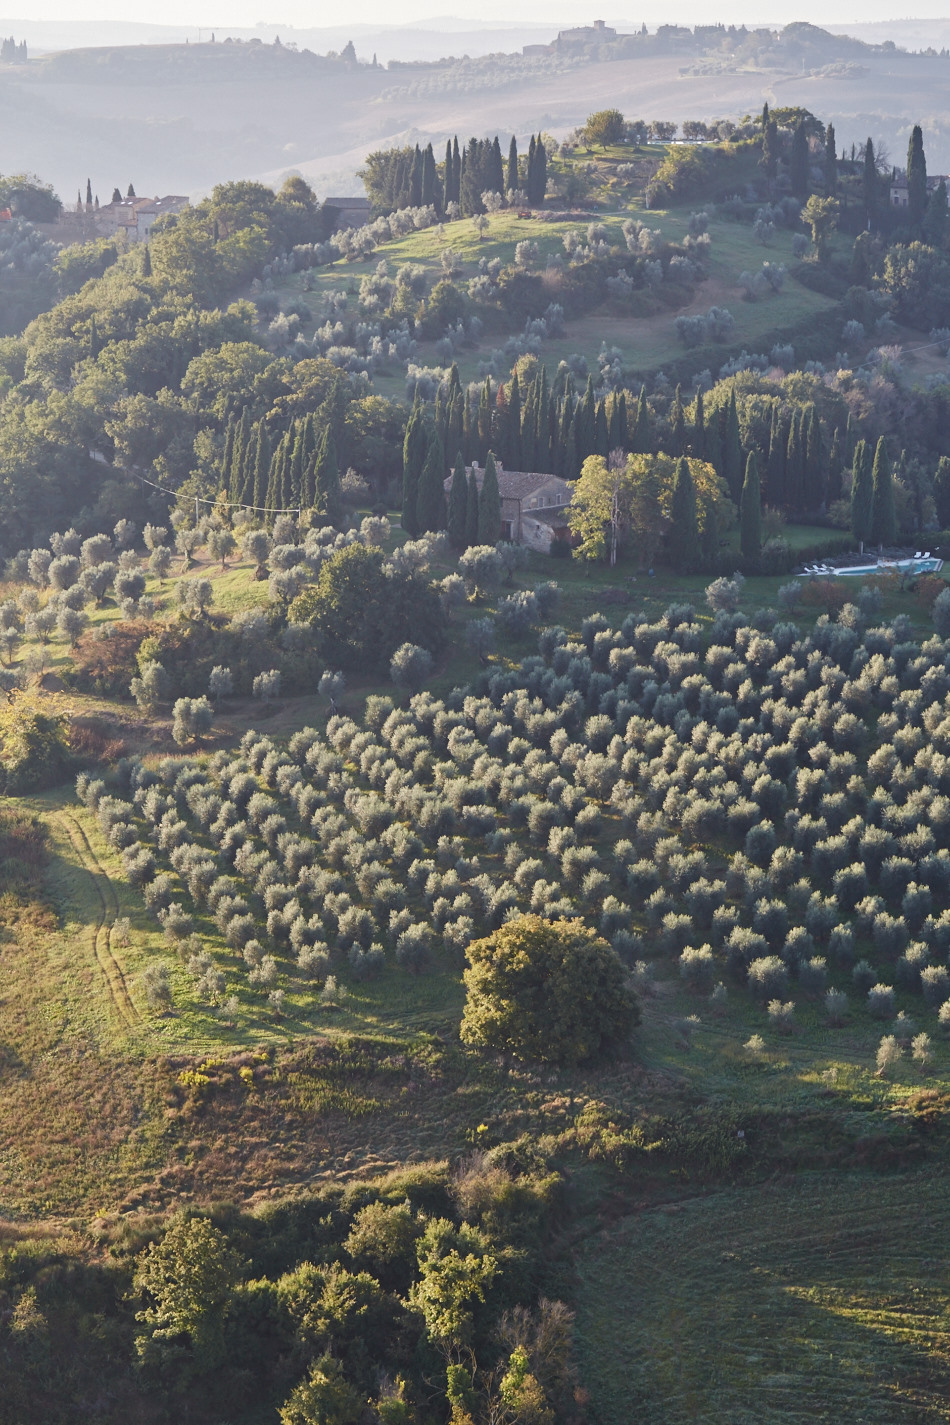 Hot Air Ballooning in Tuscany